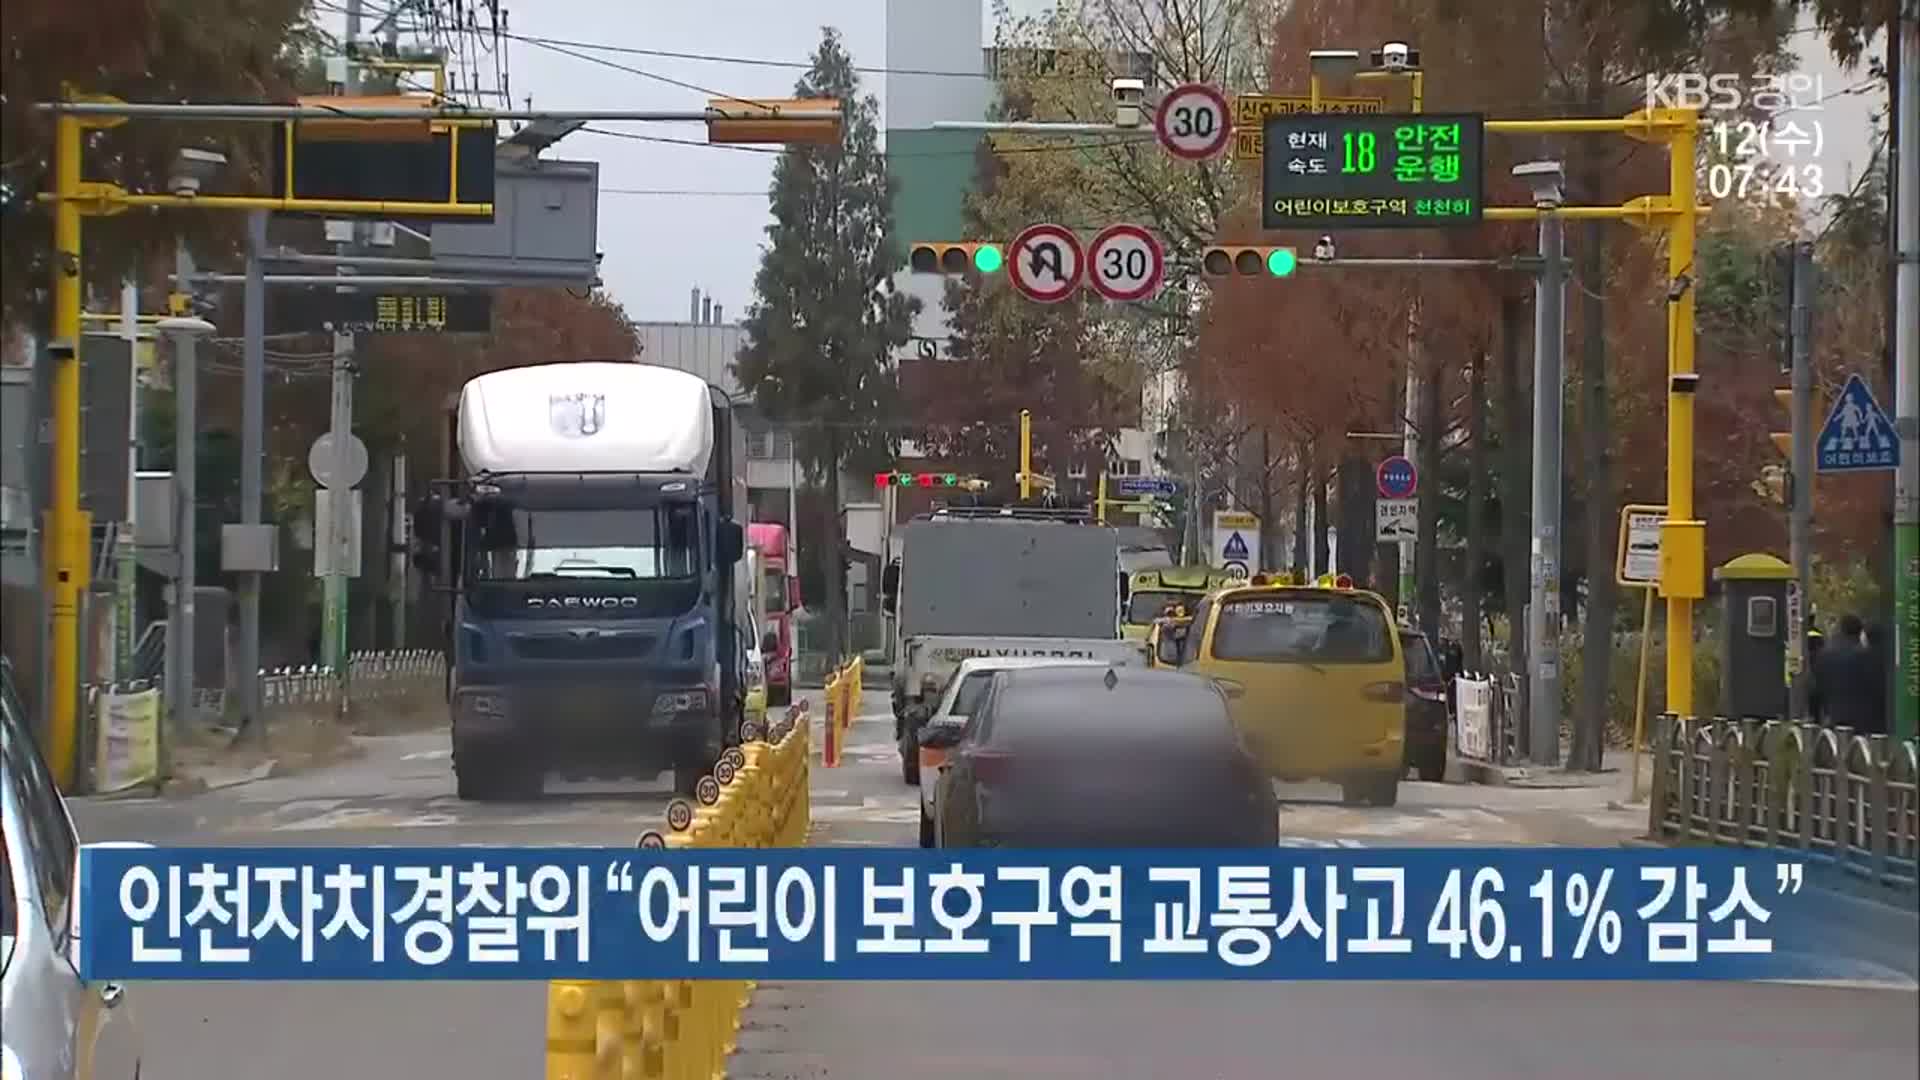 인천자치경찰위 “어린이 보호구역 교통사고 46.1% 감소”